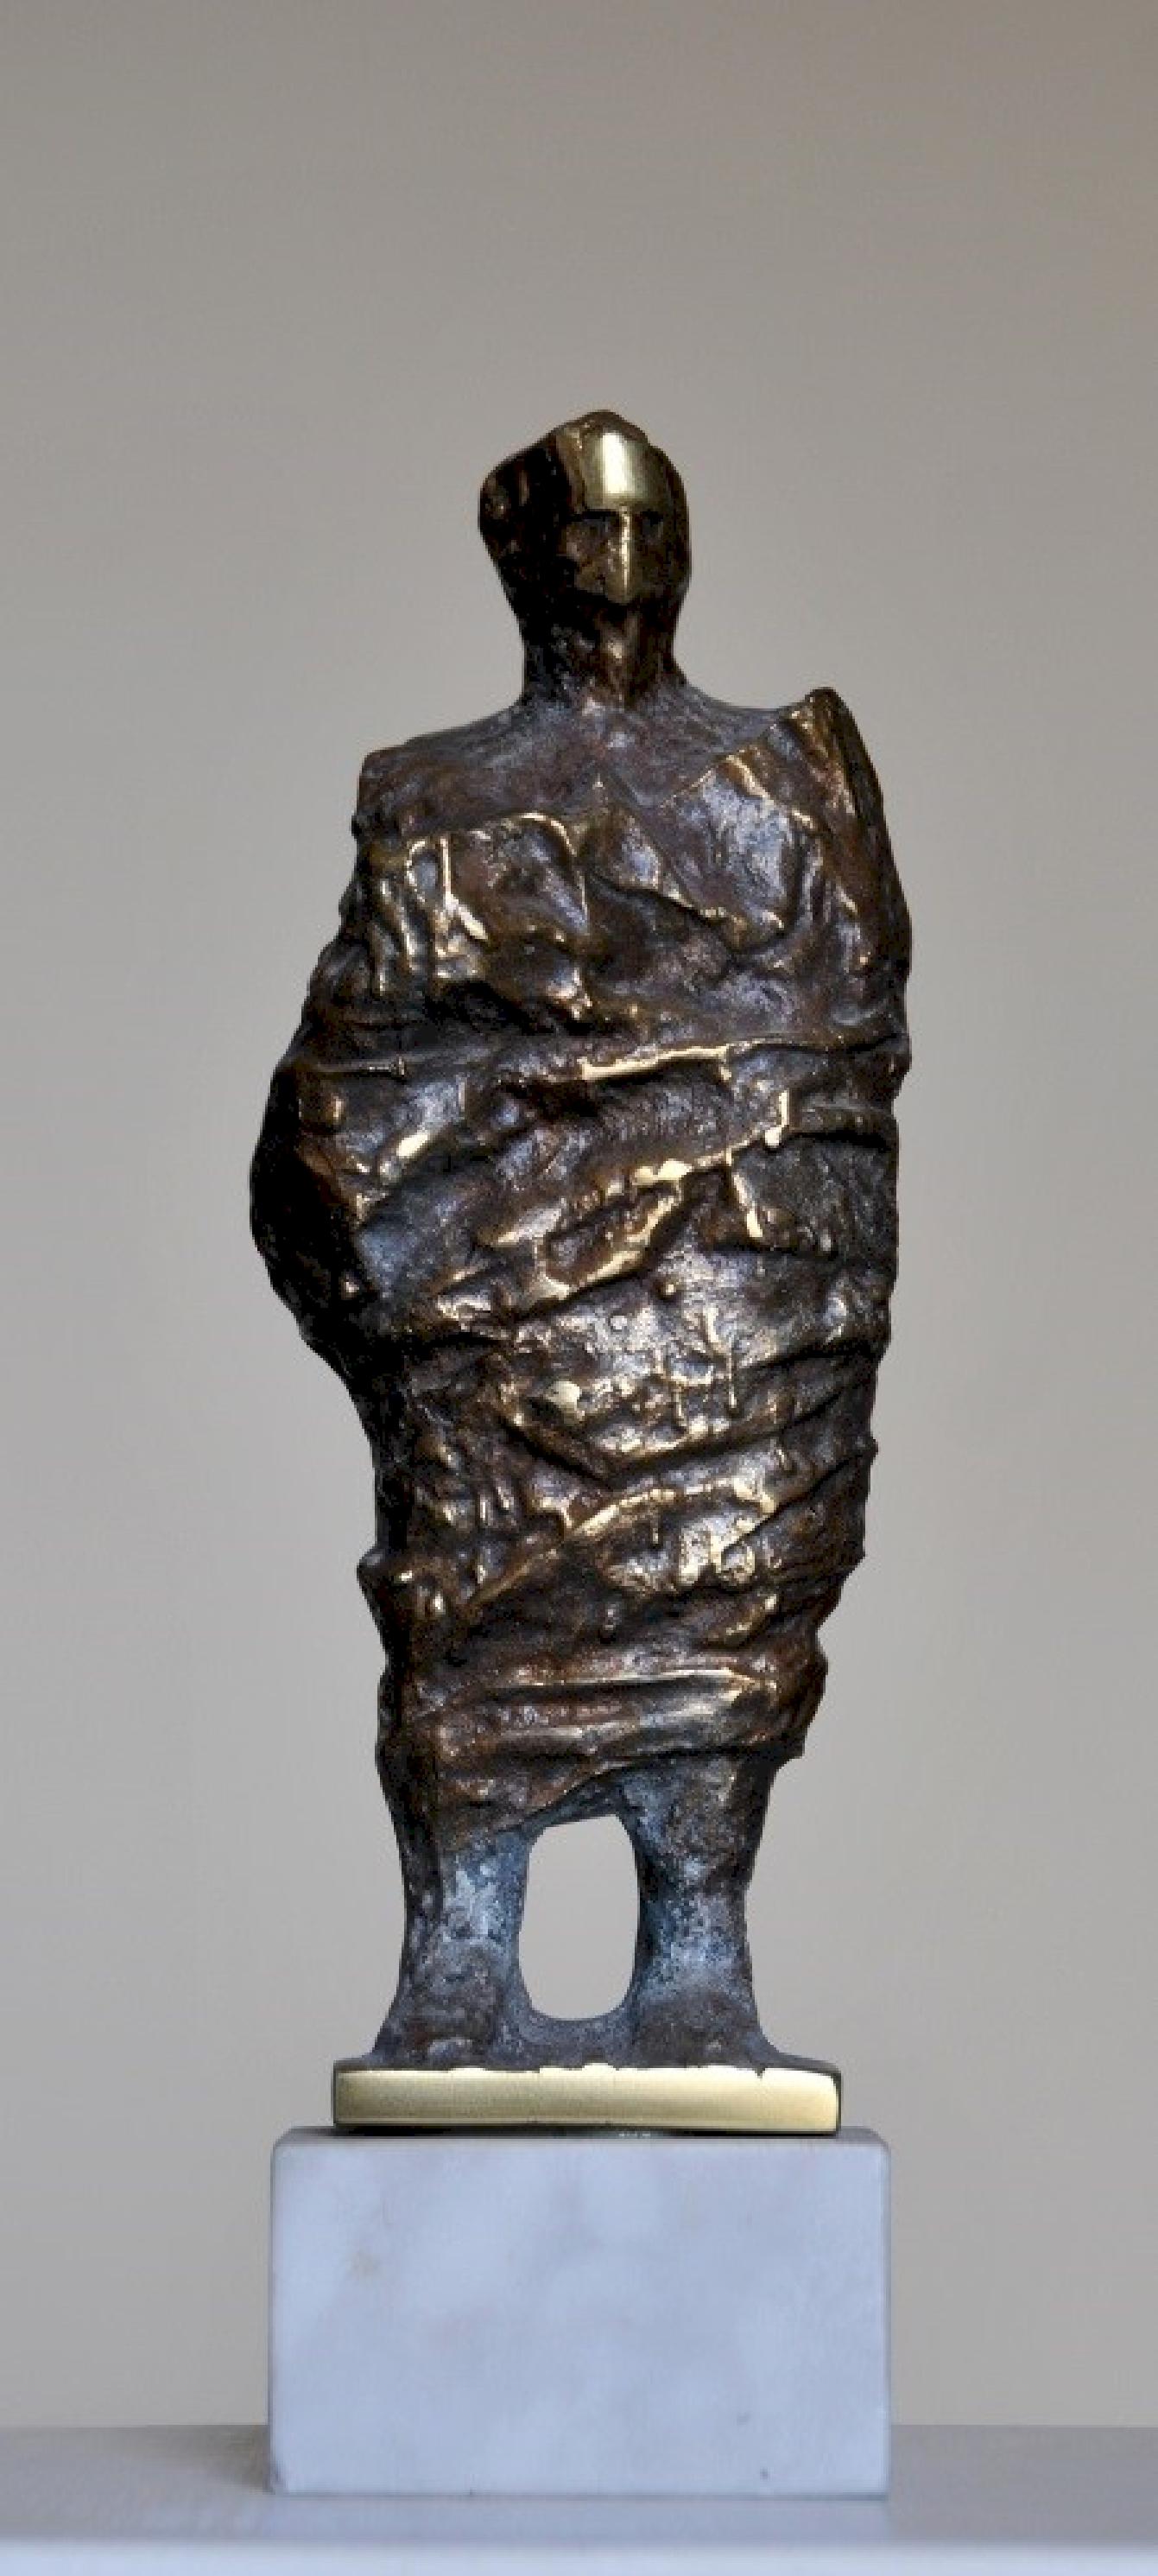 "Robed II" Sculpture en bronze 10" x 4" x 2" inch by Sarkis Tossonian

Sarkis Tossoonian est né à Alexandrie en 1953. Il est diplômé de la Faculté des Beaux-Arts/Sculpture en 1979. Il a commencé à exposer dans des expositions individuelles et